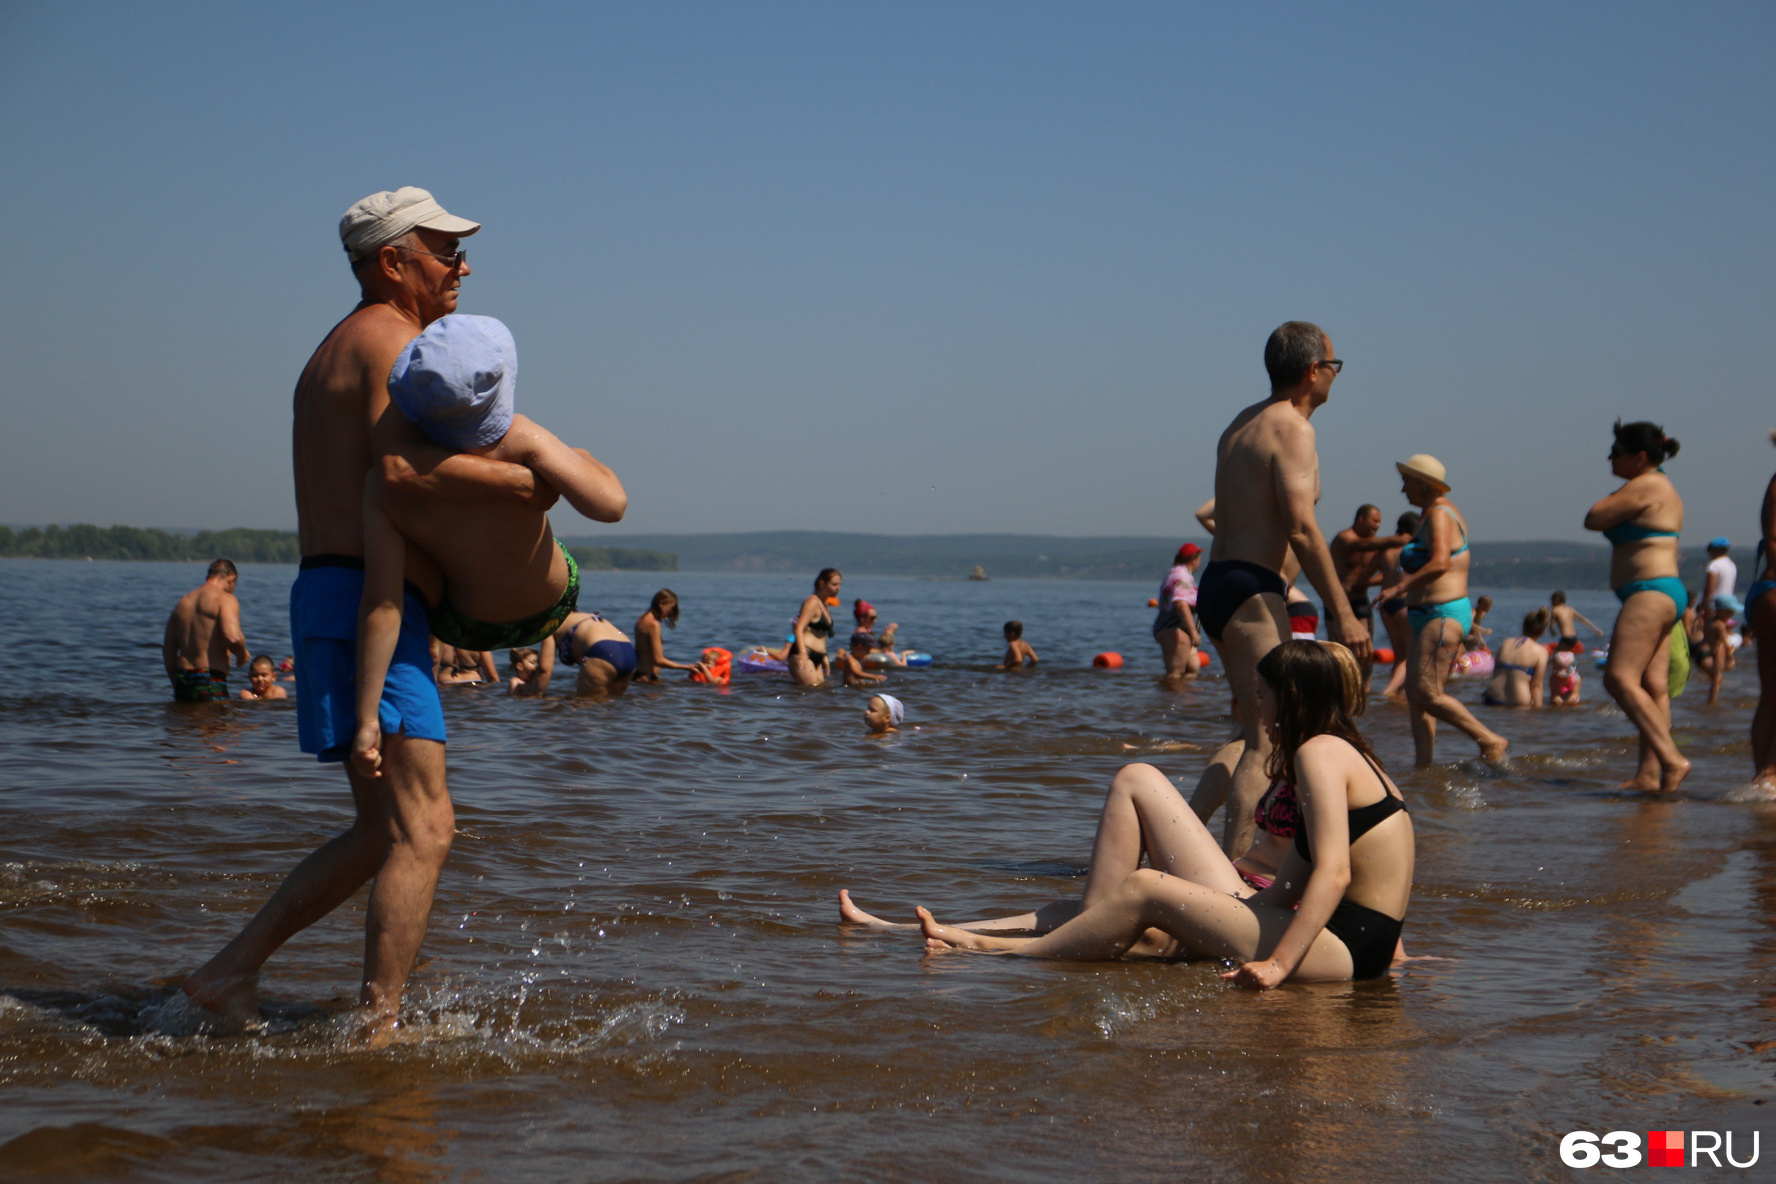 Разница температуры воды и воздуха может сильно навредить здоровью во время купания